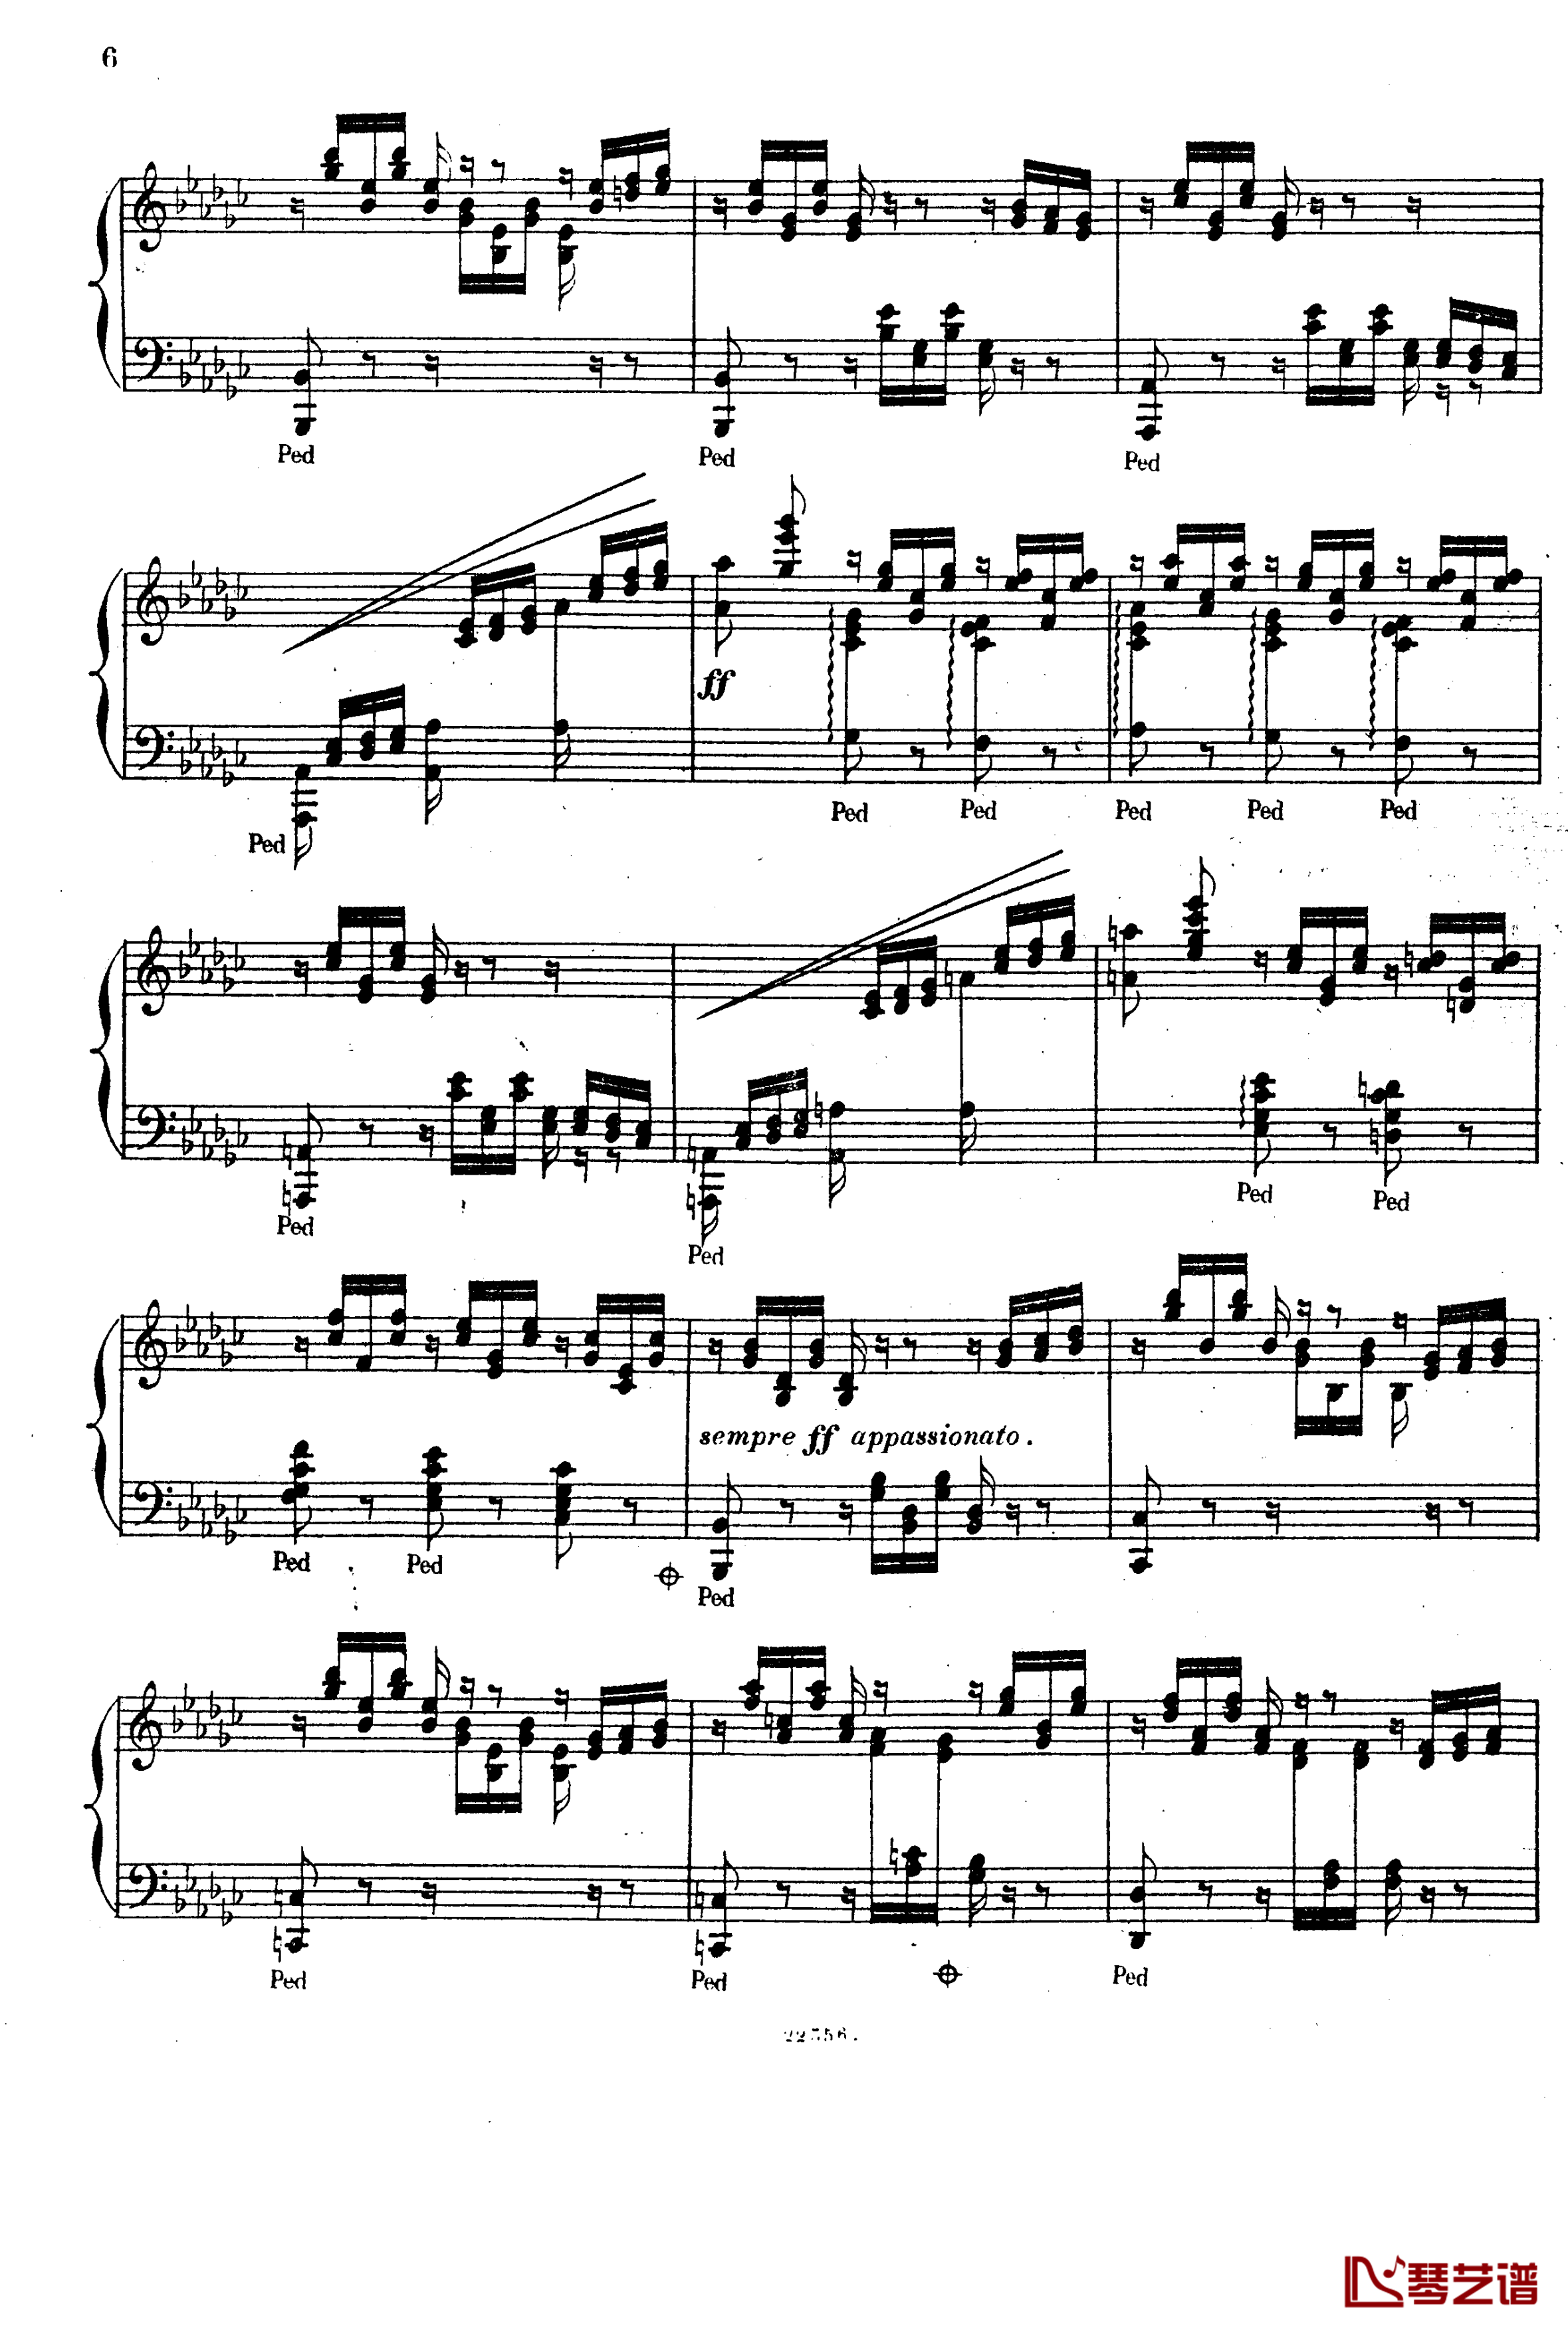  前奏曲与赋格 Op.6钢琴谱-斯甘巴蒂5